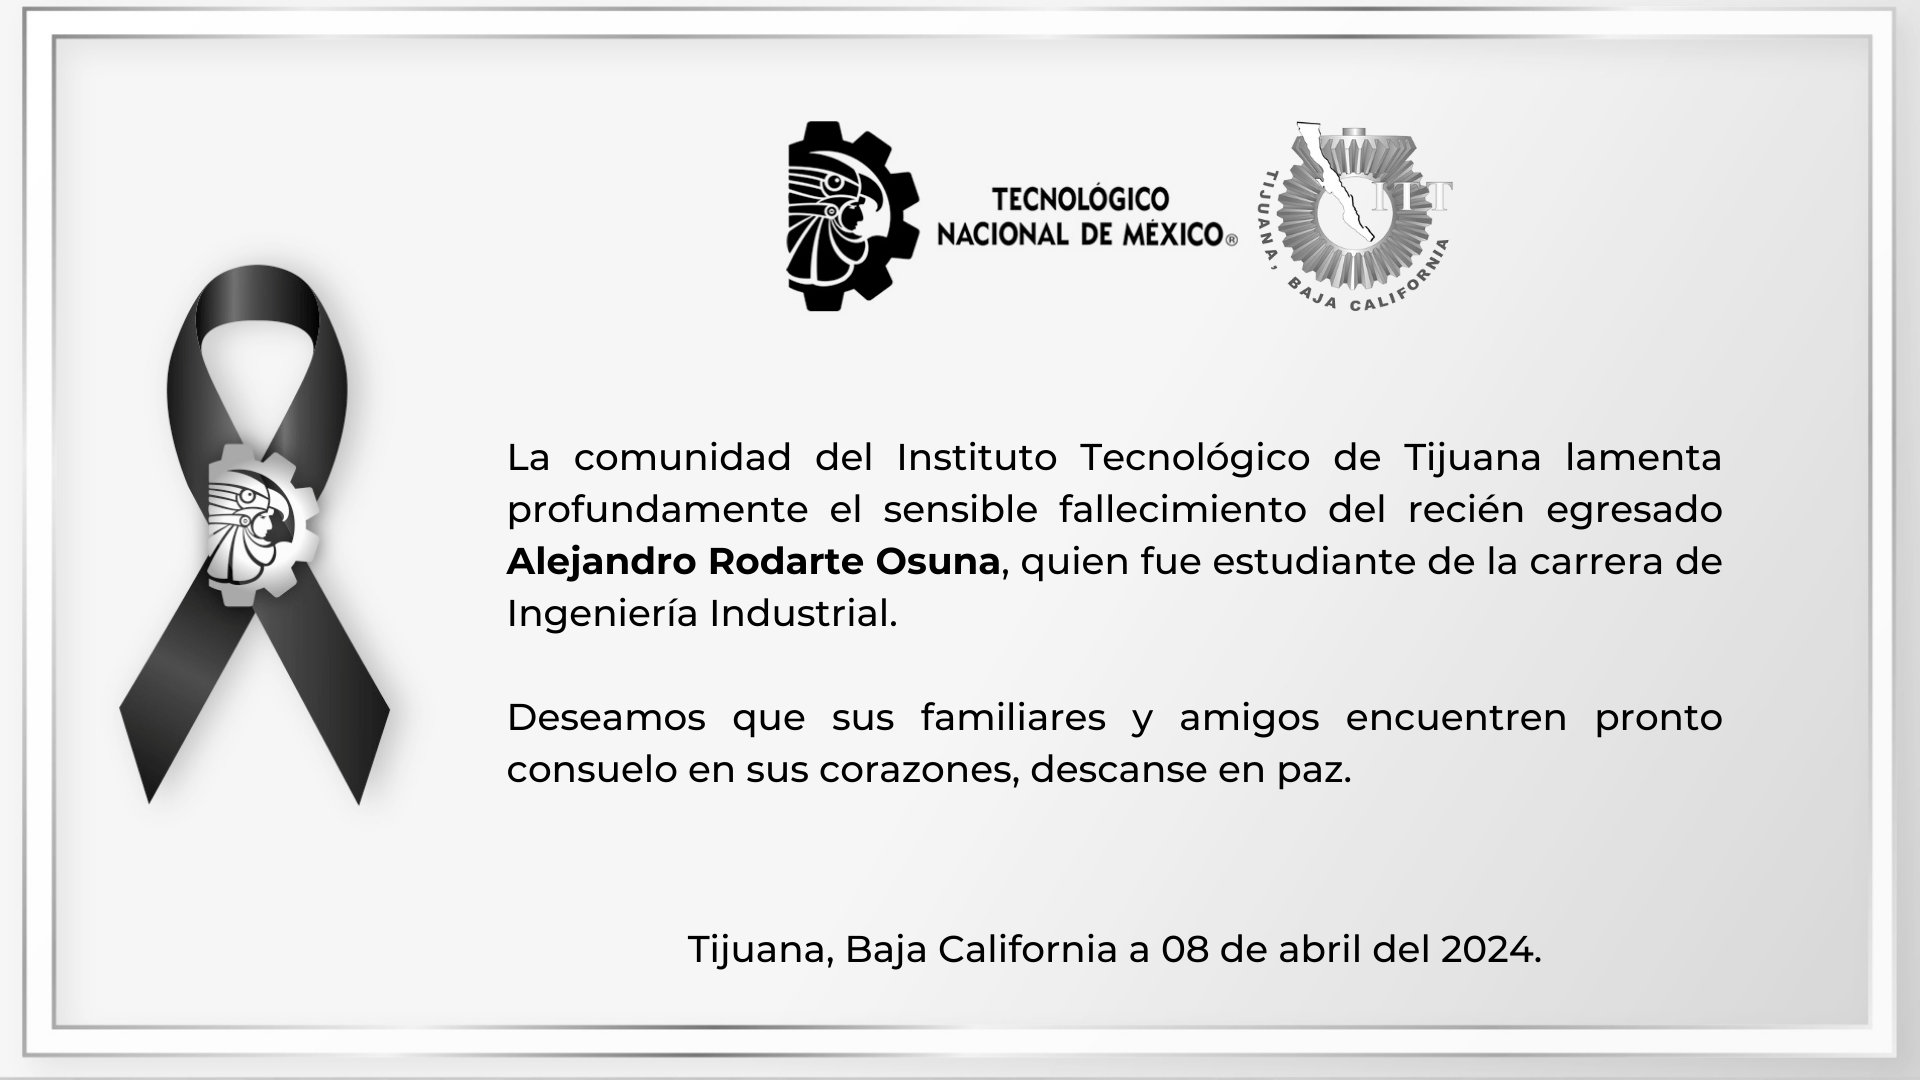 La comunidad del Instituto Tecnológico de Tijuana lamenta profundamente el sensible fallecimiento del recién egresado Alejandro Rodarte Osuna